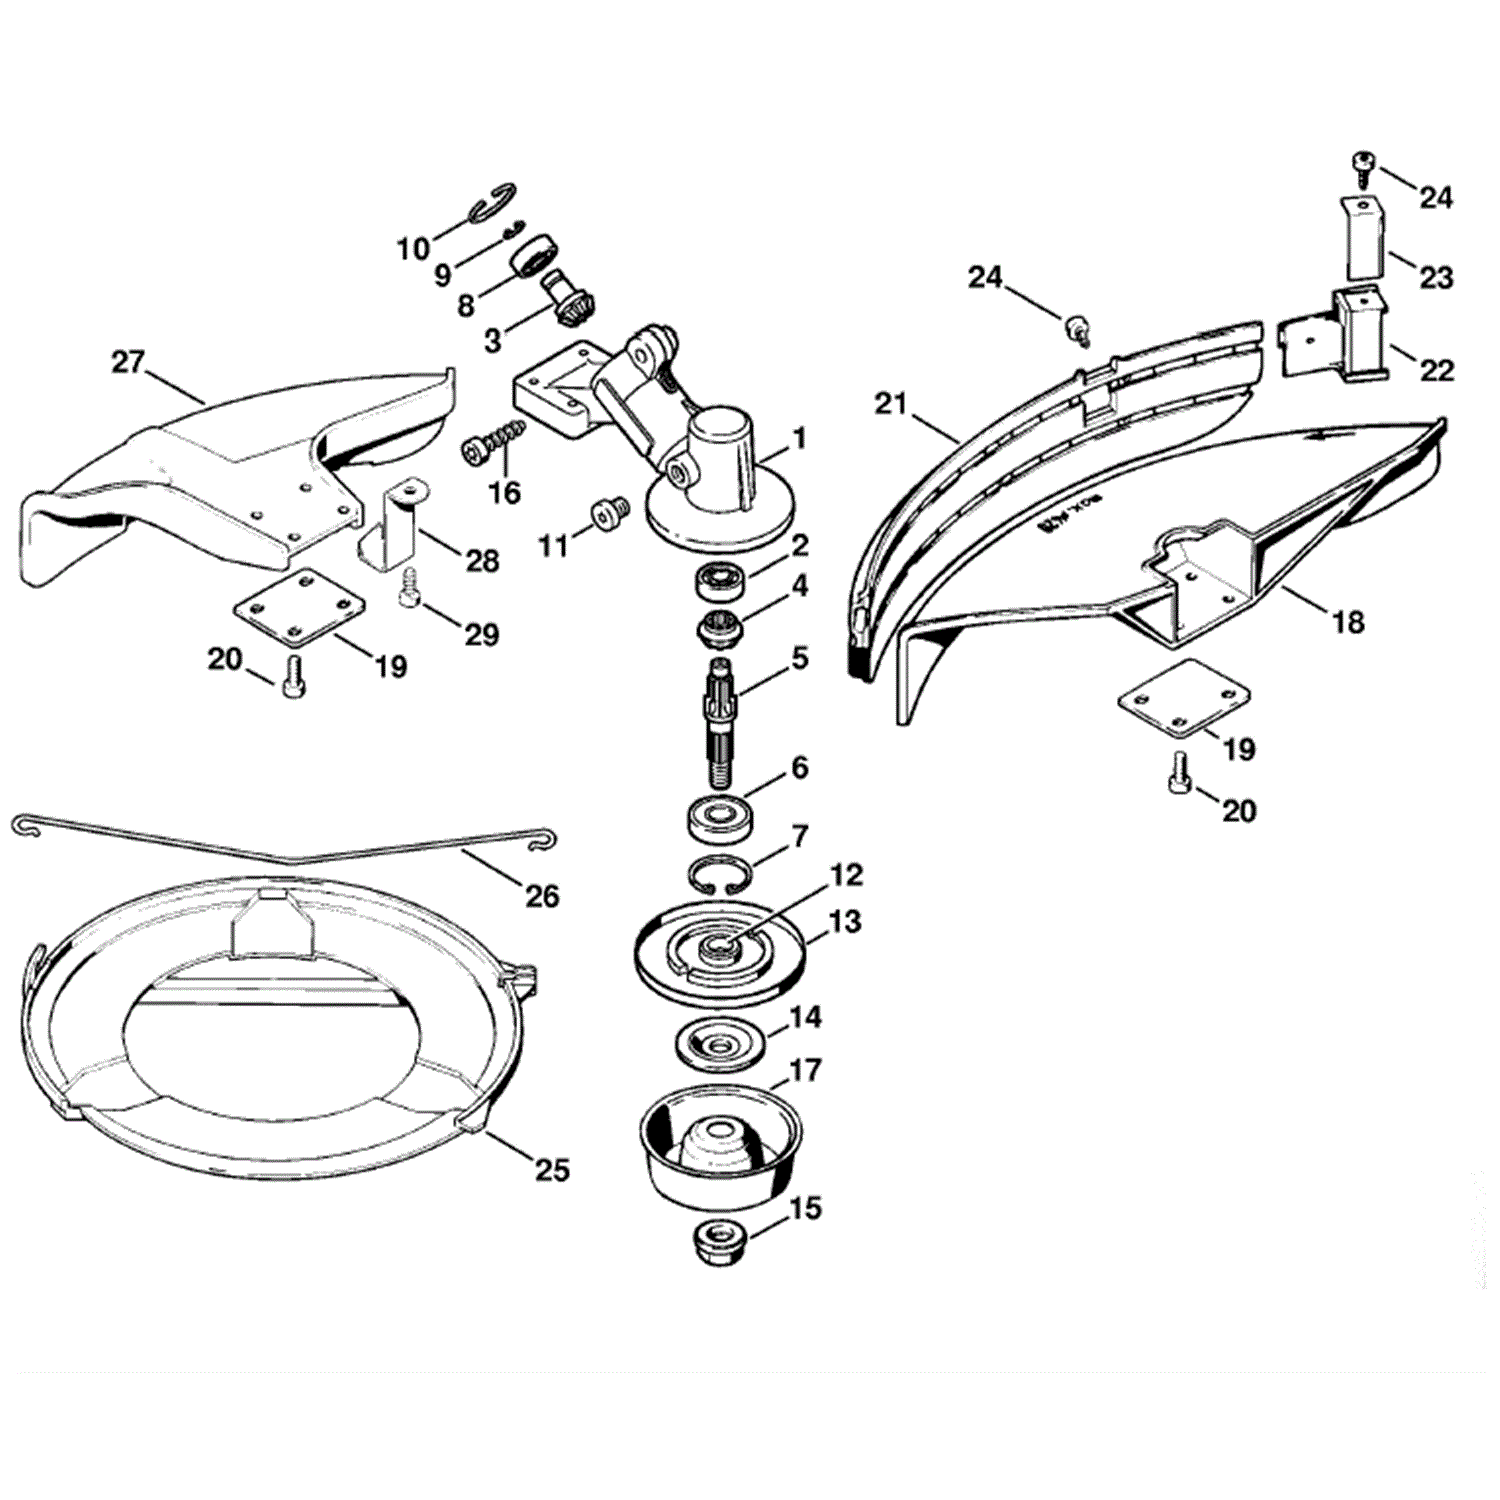  FS 40 Parts Diagram